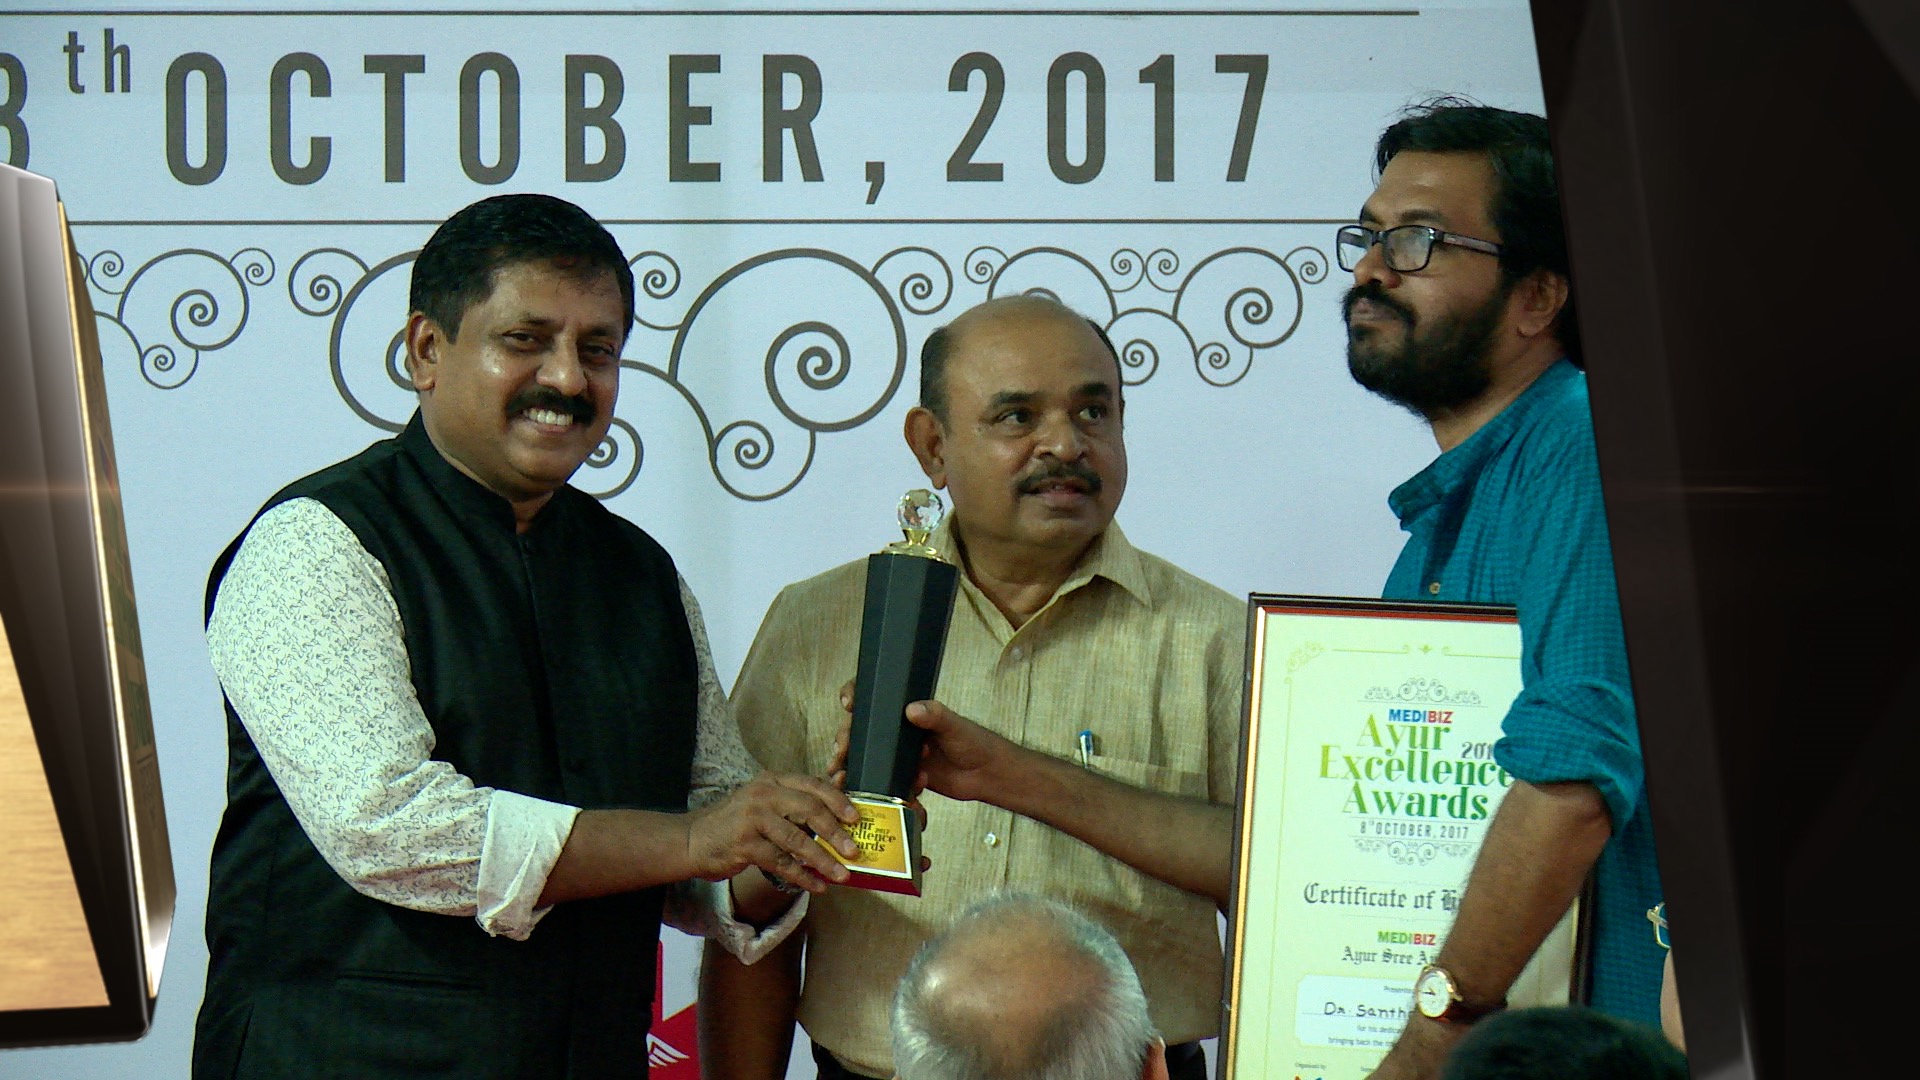 Medibiz Ayur Excellence Award - Ayur Sree - Dr. Santhosh